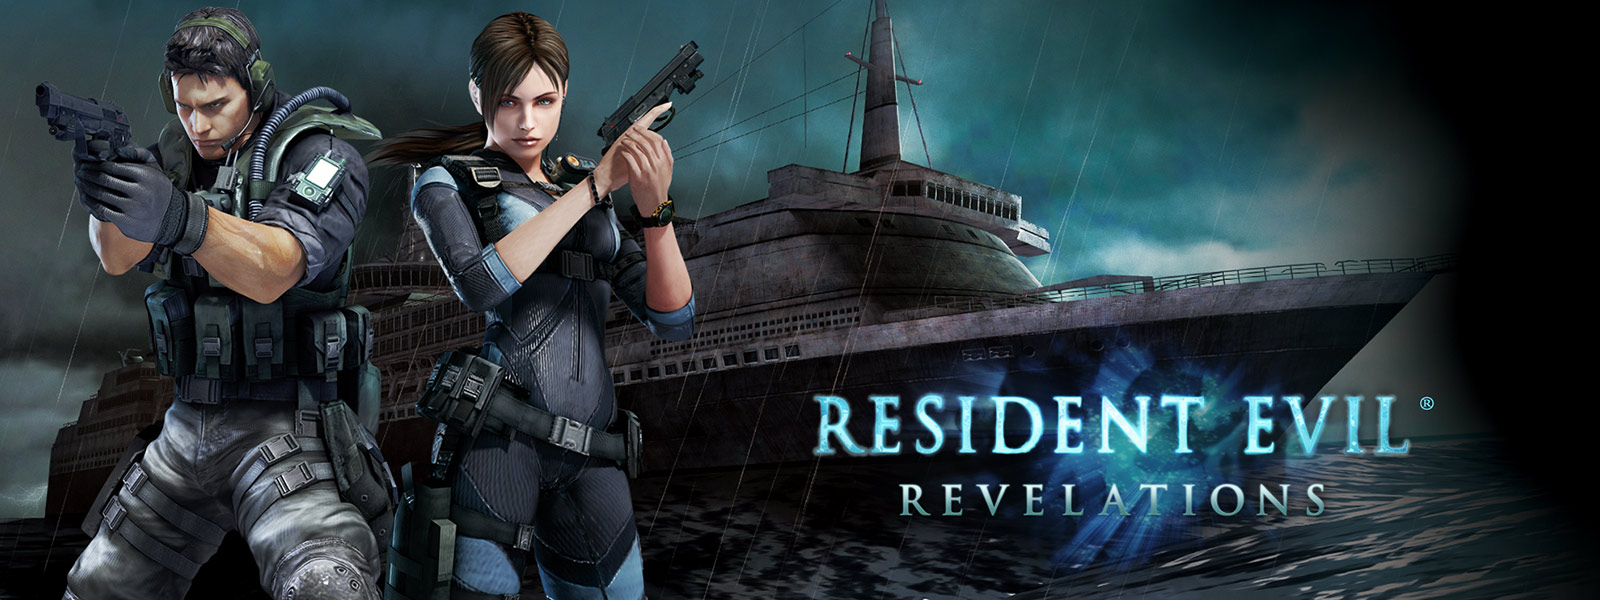 Resident Evil Revelations, kaksi pistoolilla aseistautunutta hahmoa hylätyn matkustajalaivan edessä